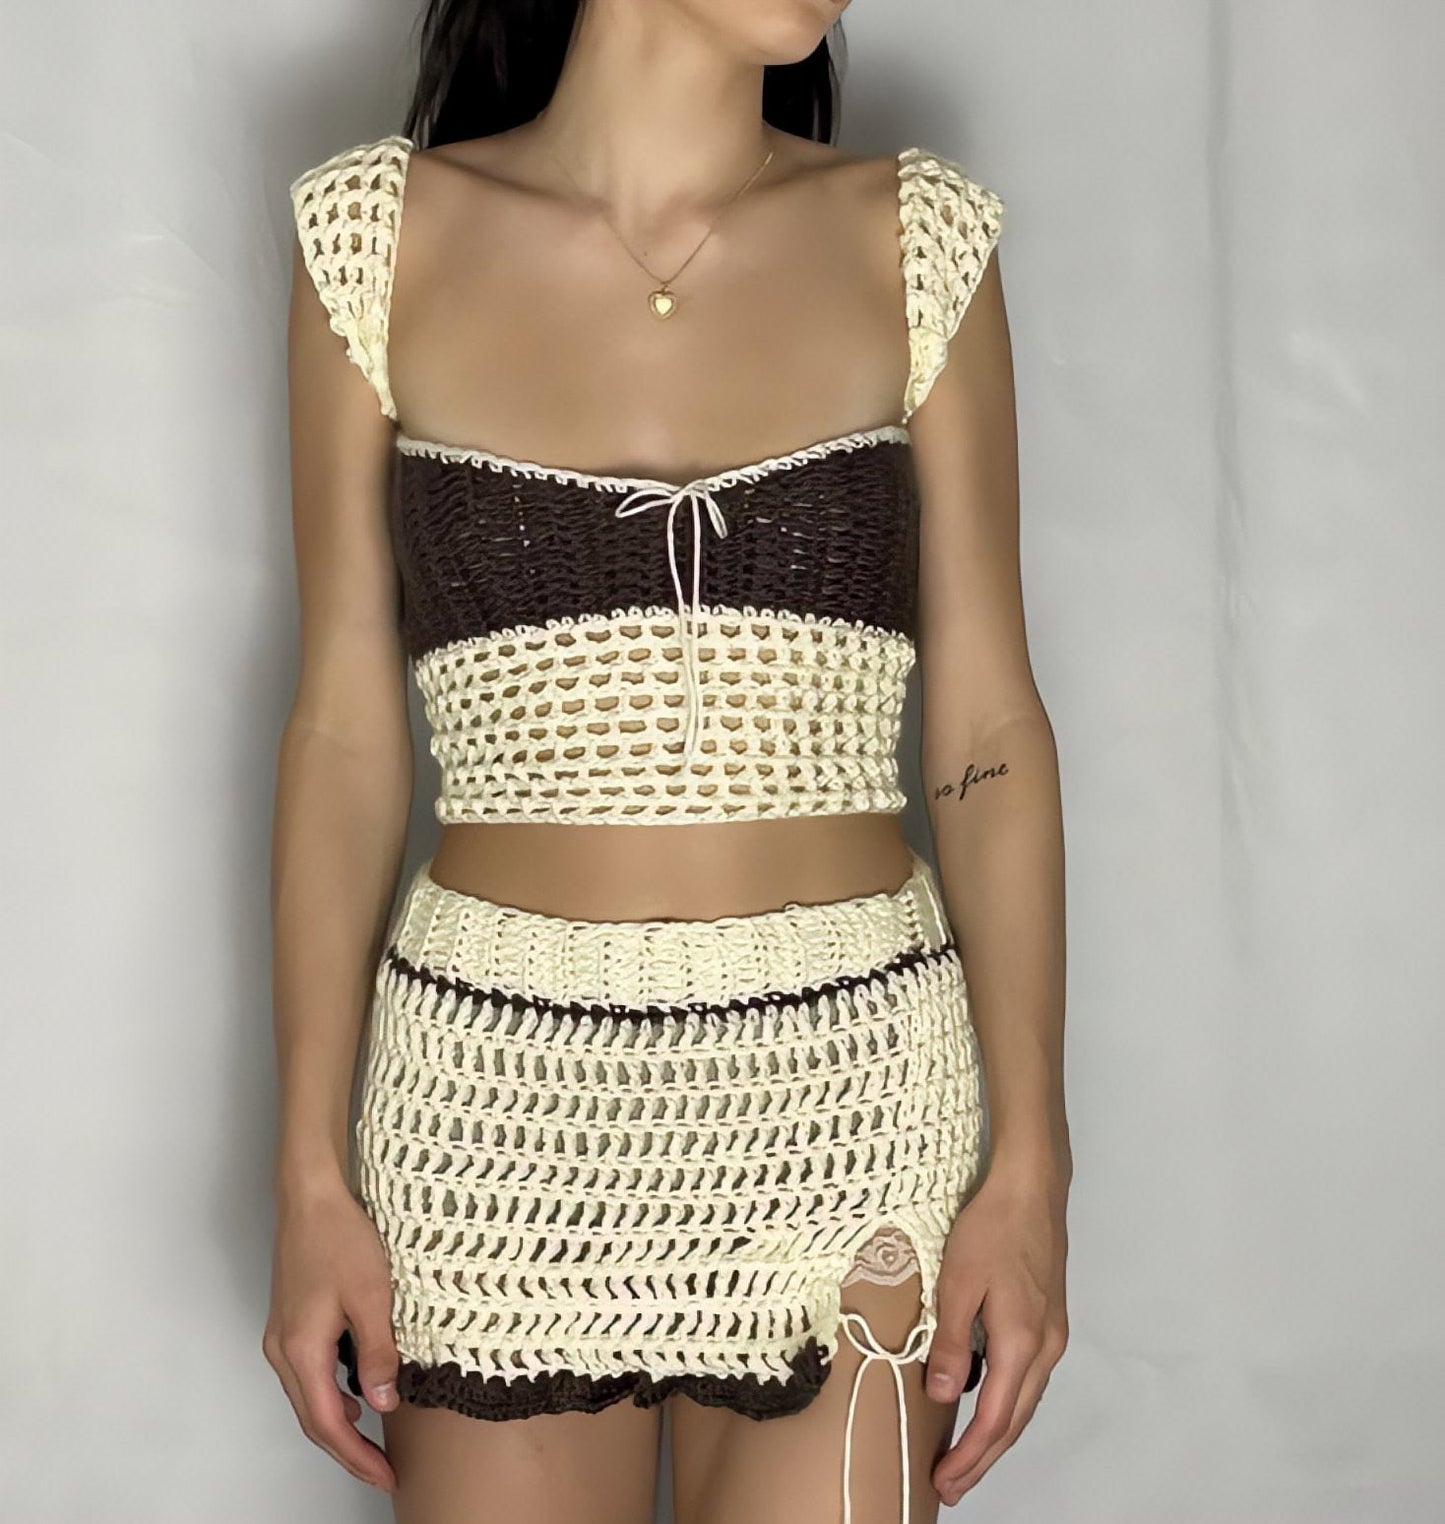 'Lana' Crotchet Top & Skirt Set